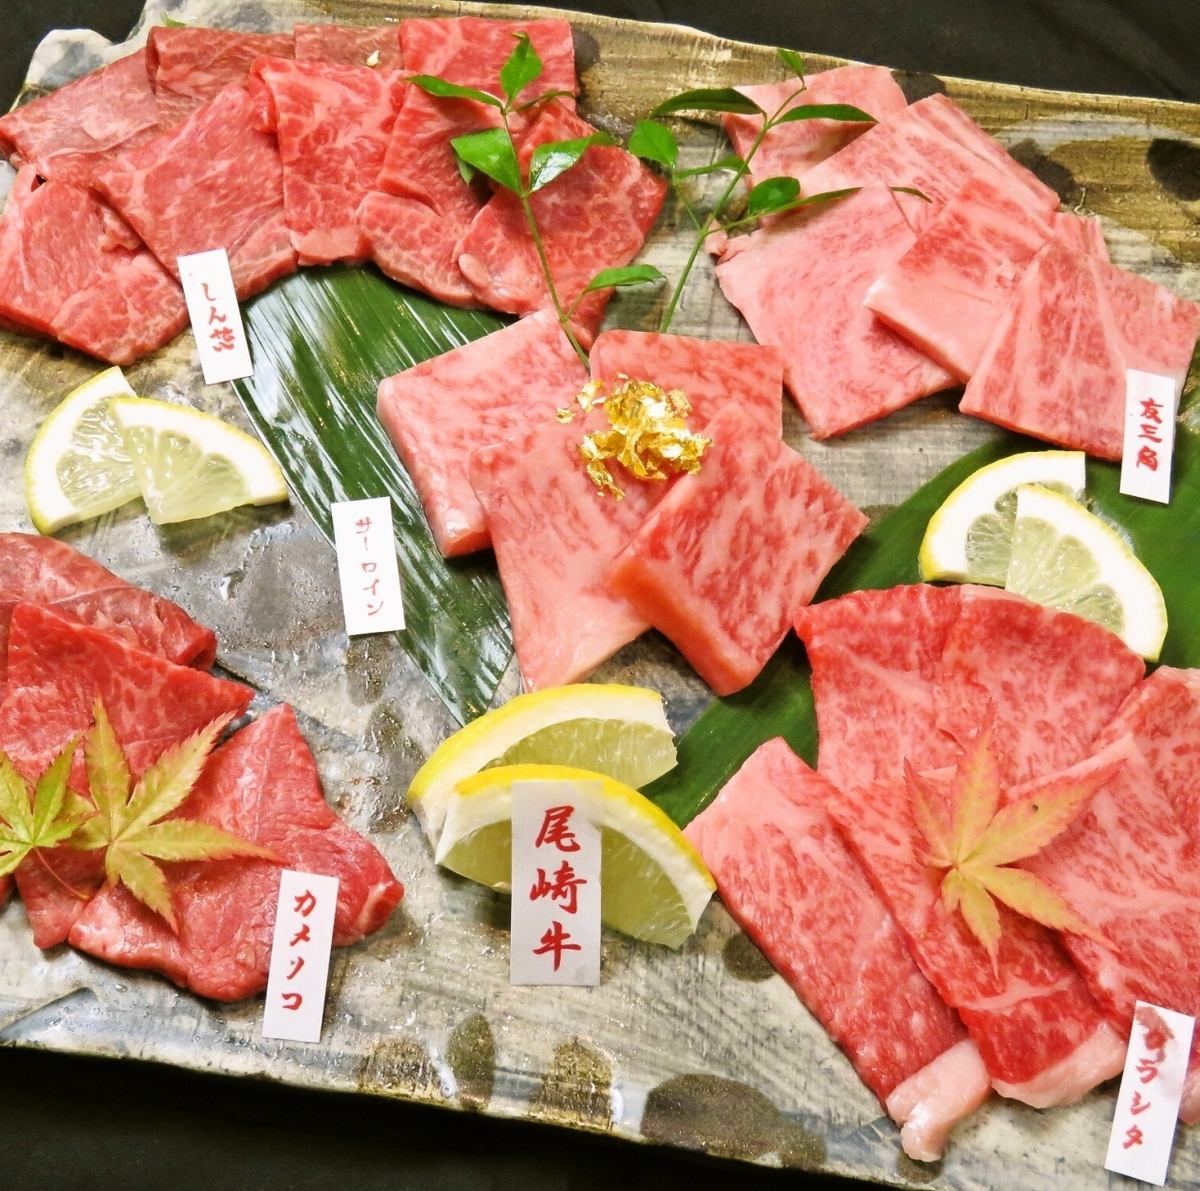 한마리 구입의 오자키 소를 호화롭게 즐길 수 있는 코스 7000엔~ 준비.